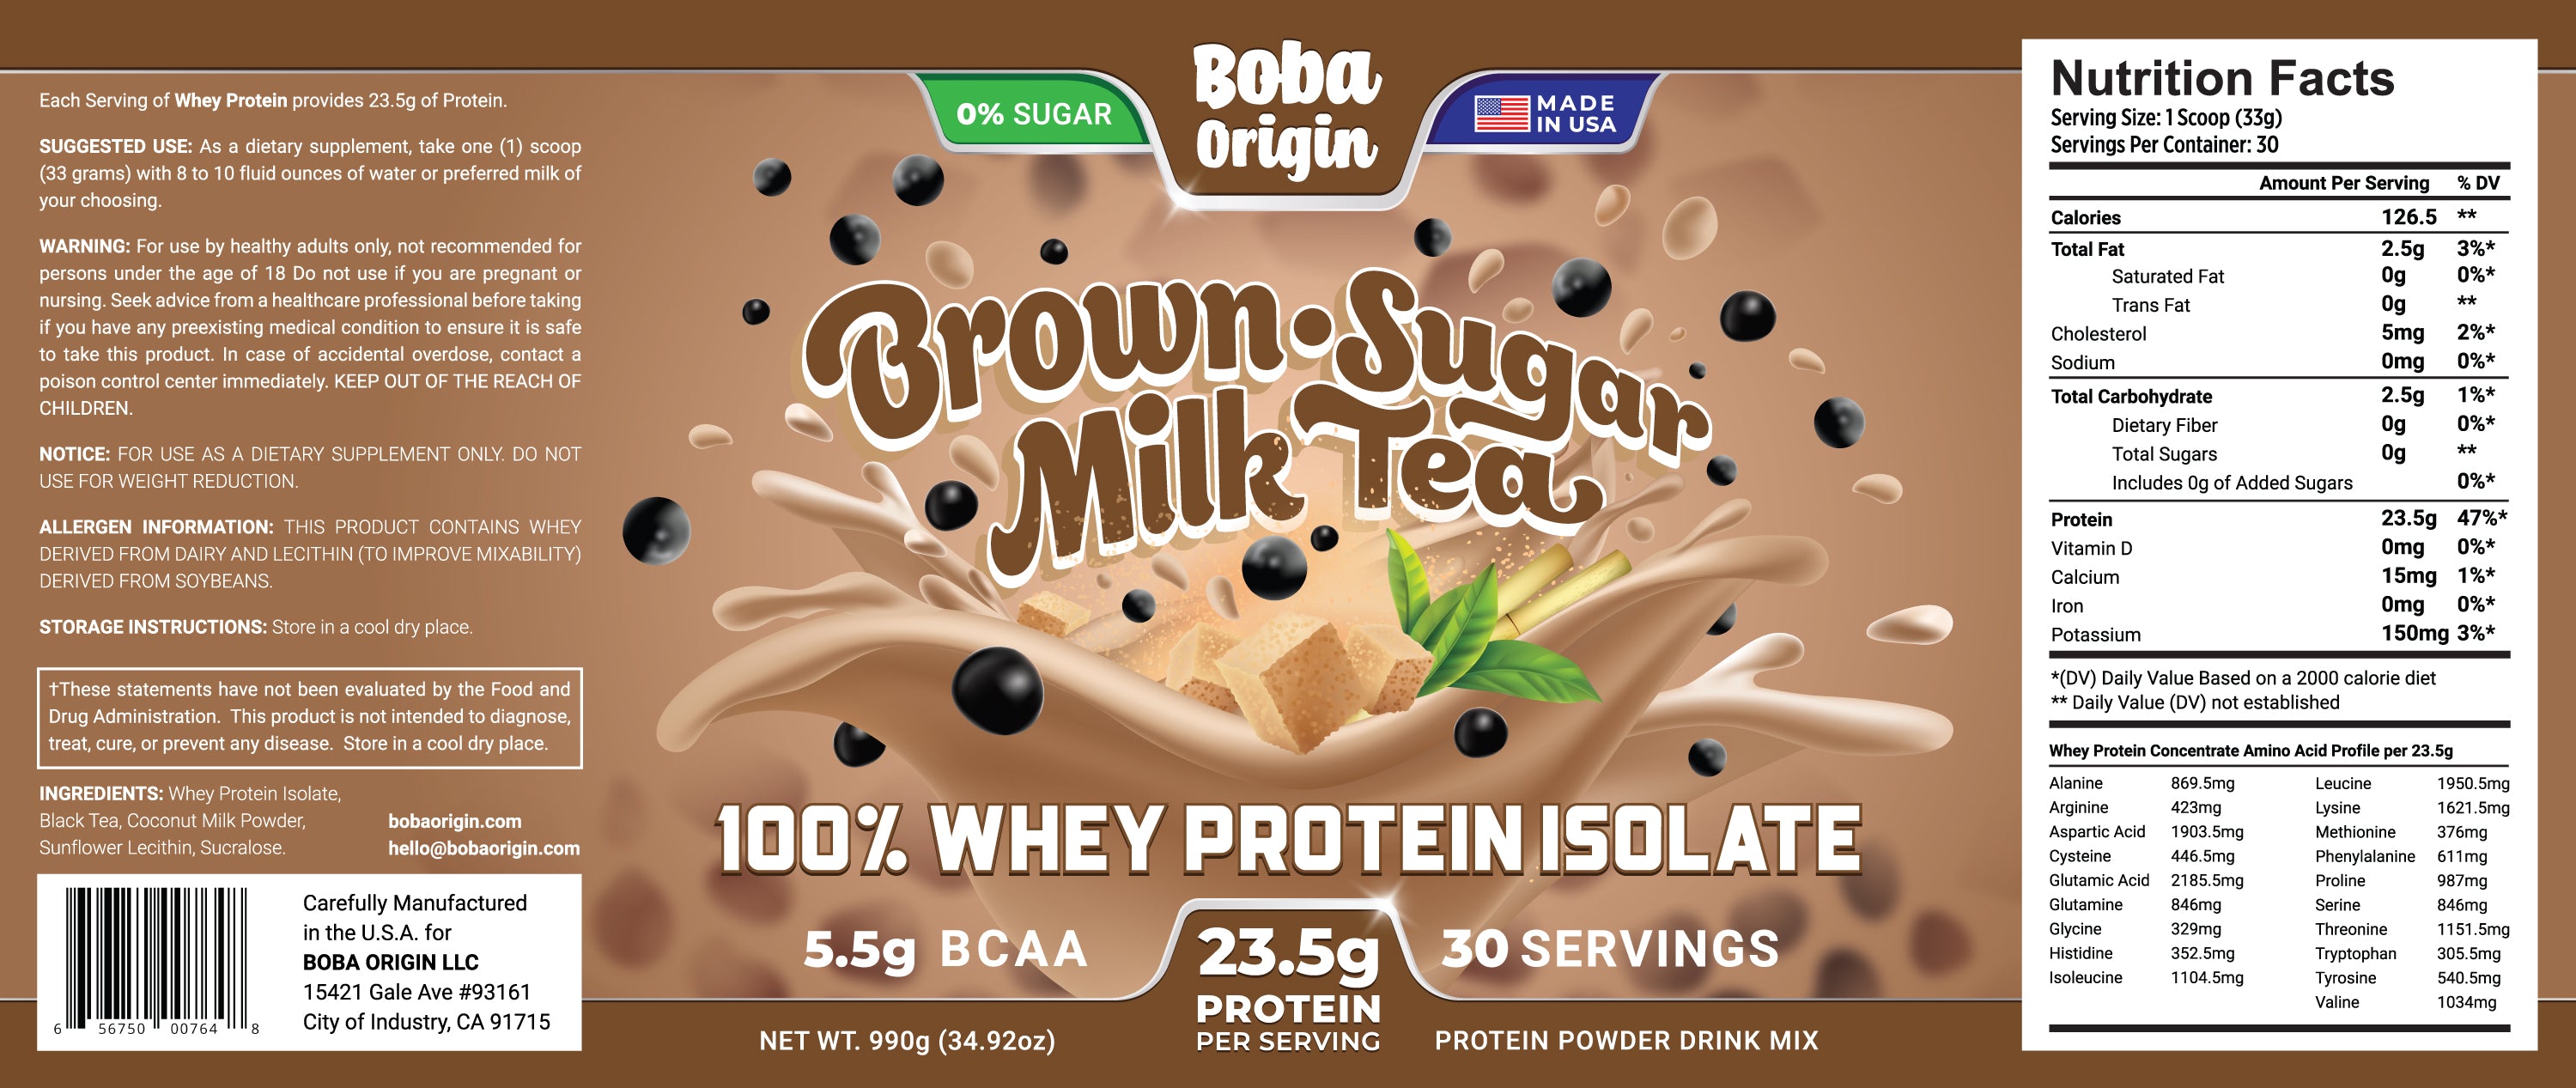 Boba Milk Tea Whey Protein Isolate